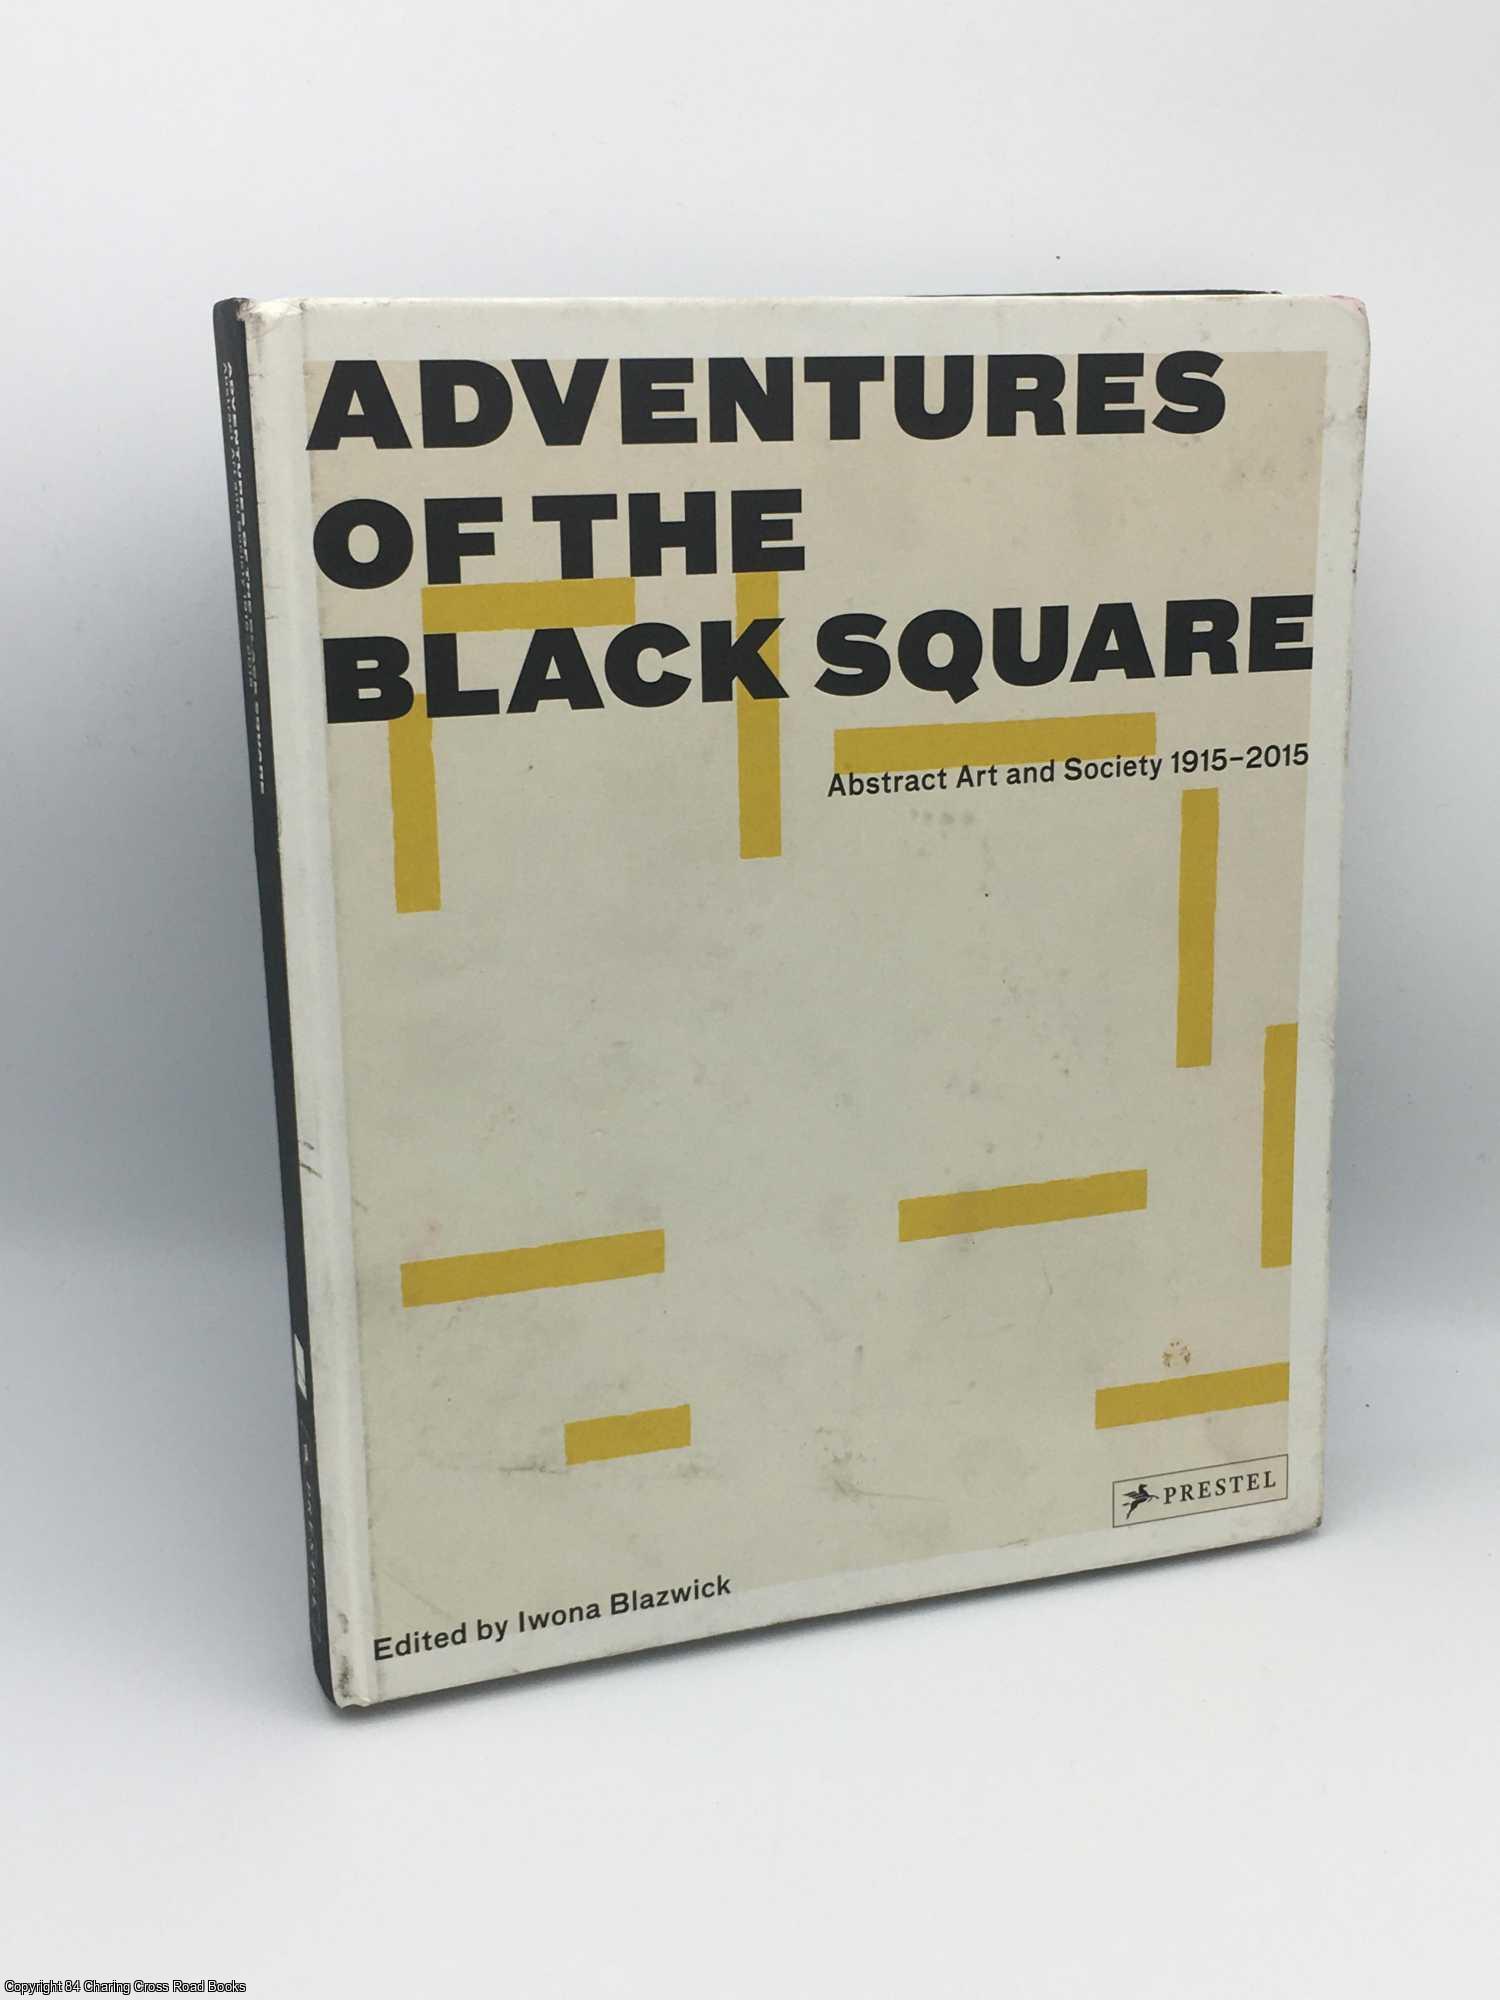 Blazwick, Iwona - Adventures of the Black Square